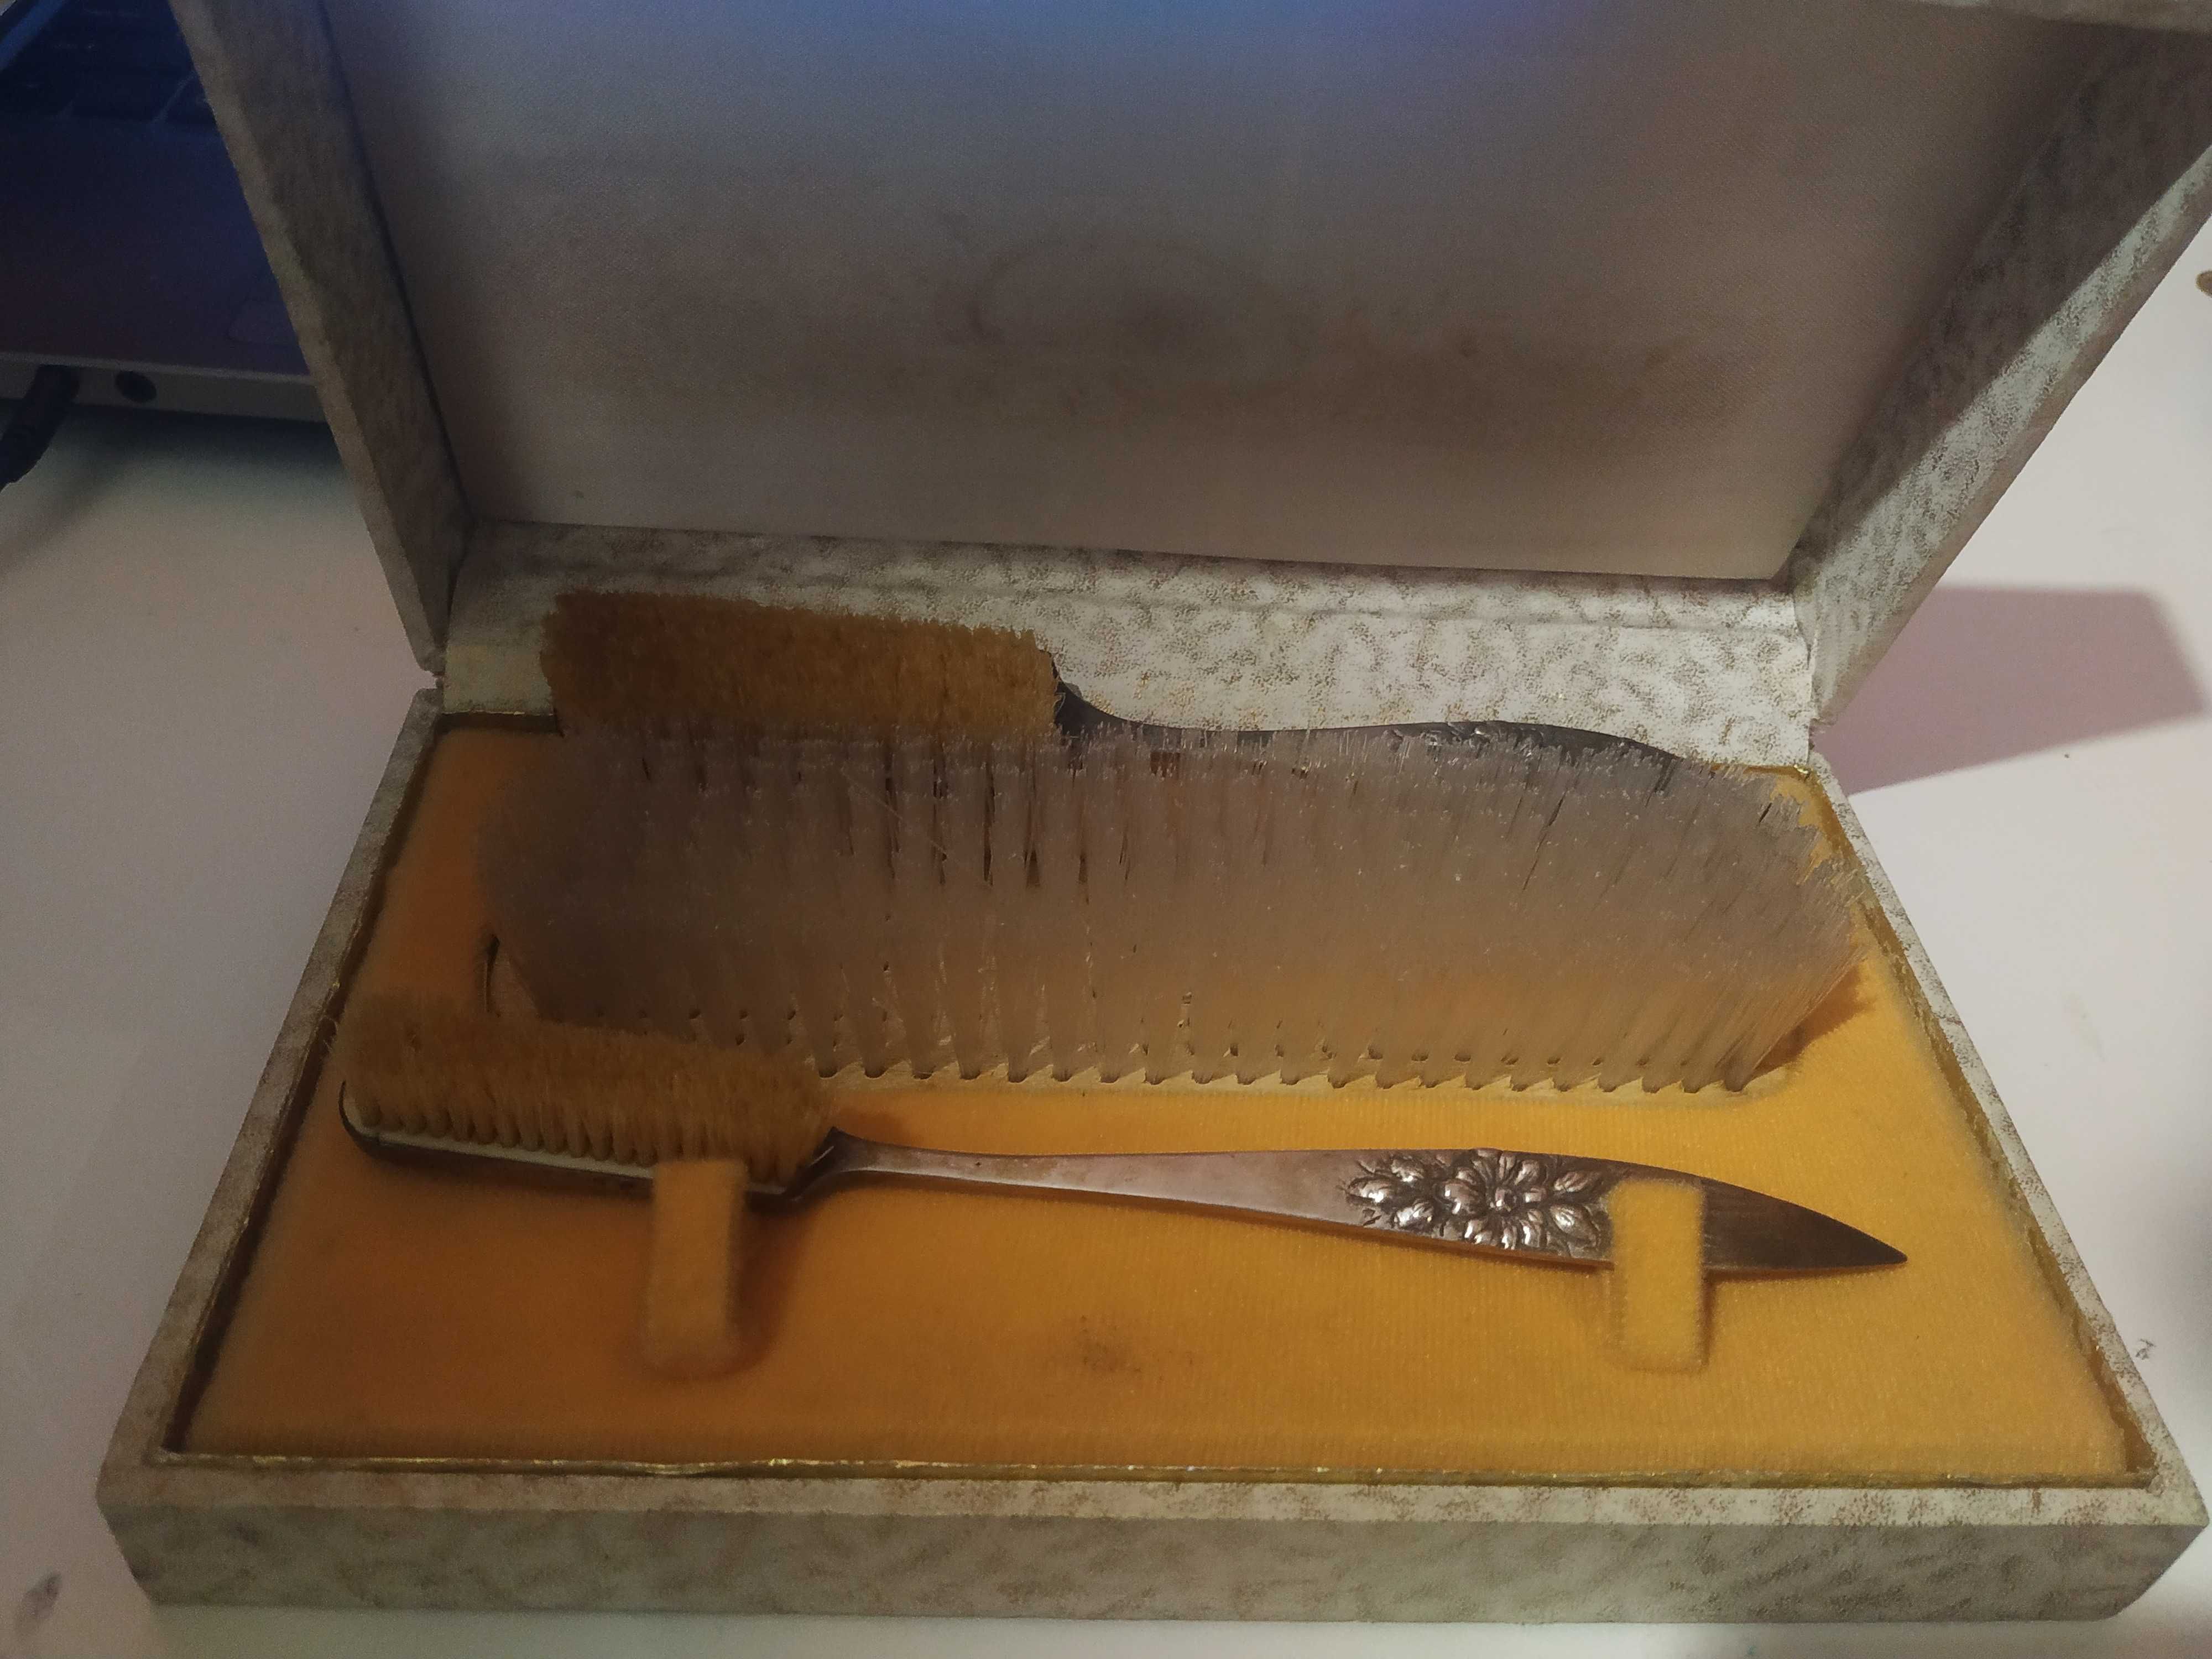 Kit de engraxar sapato antigo e pente antigo para colecionadores